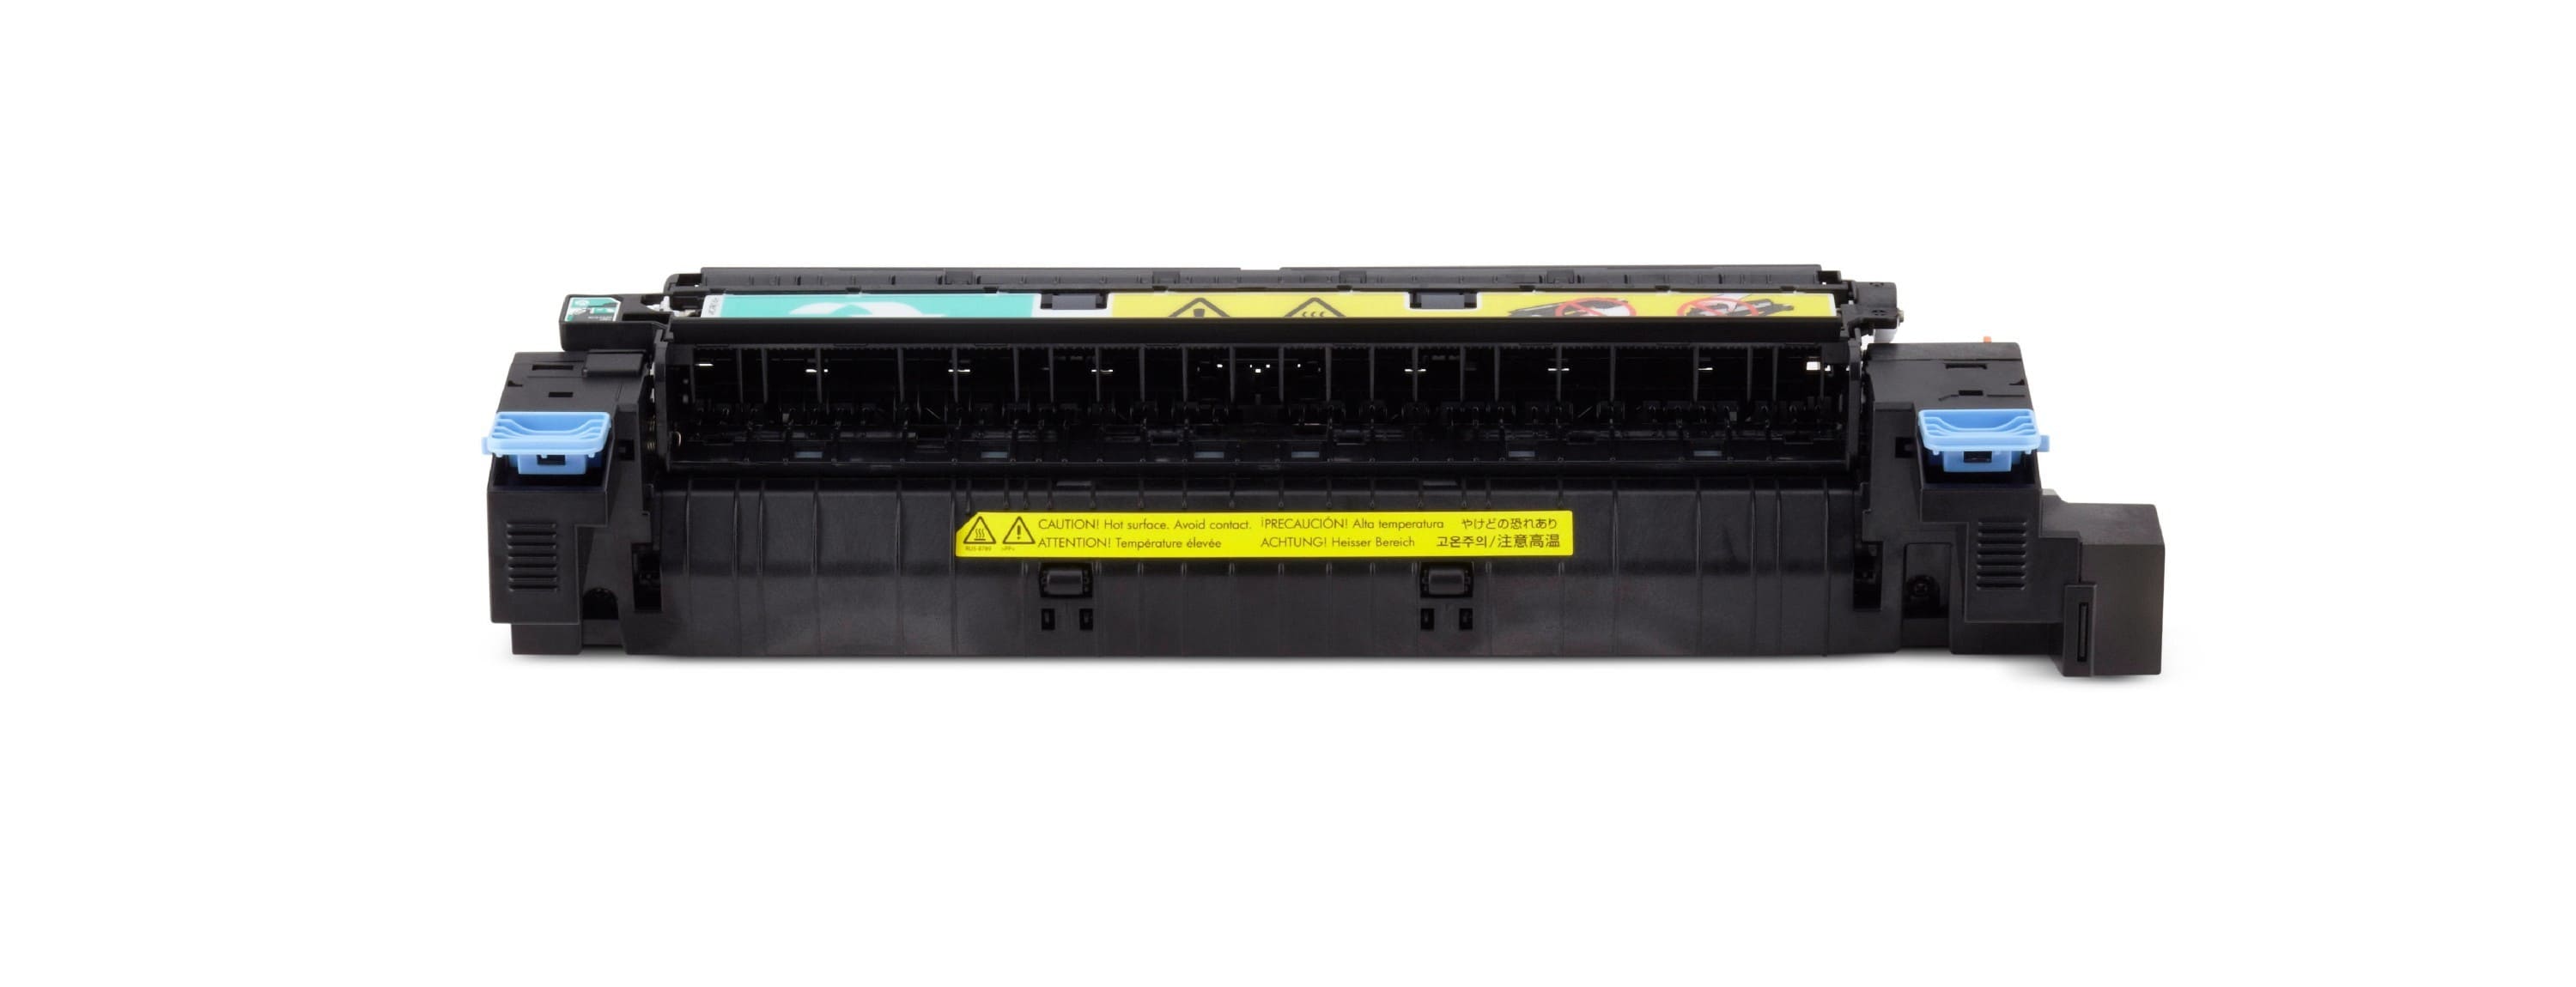 Original Service-Kit HP LaserJet Enterprise 700 Color MFP M 775 z plus (CE515A)